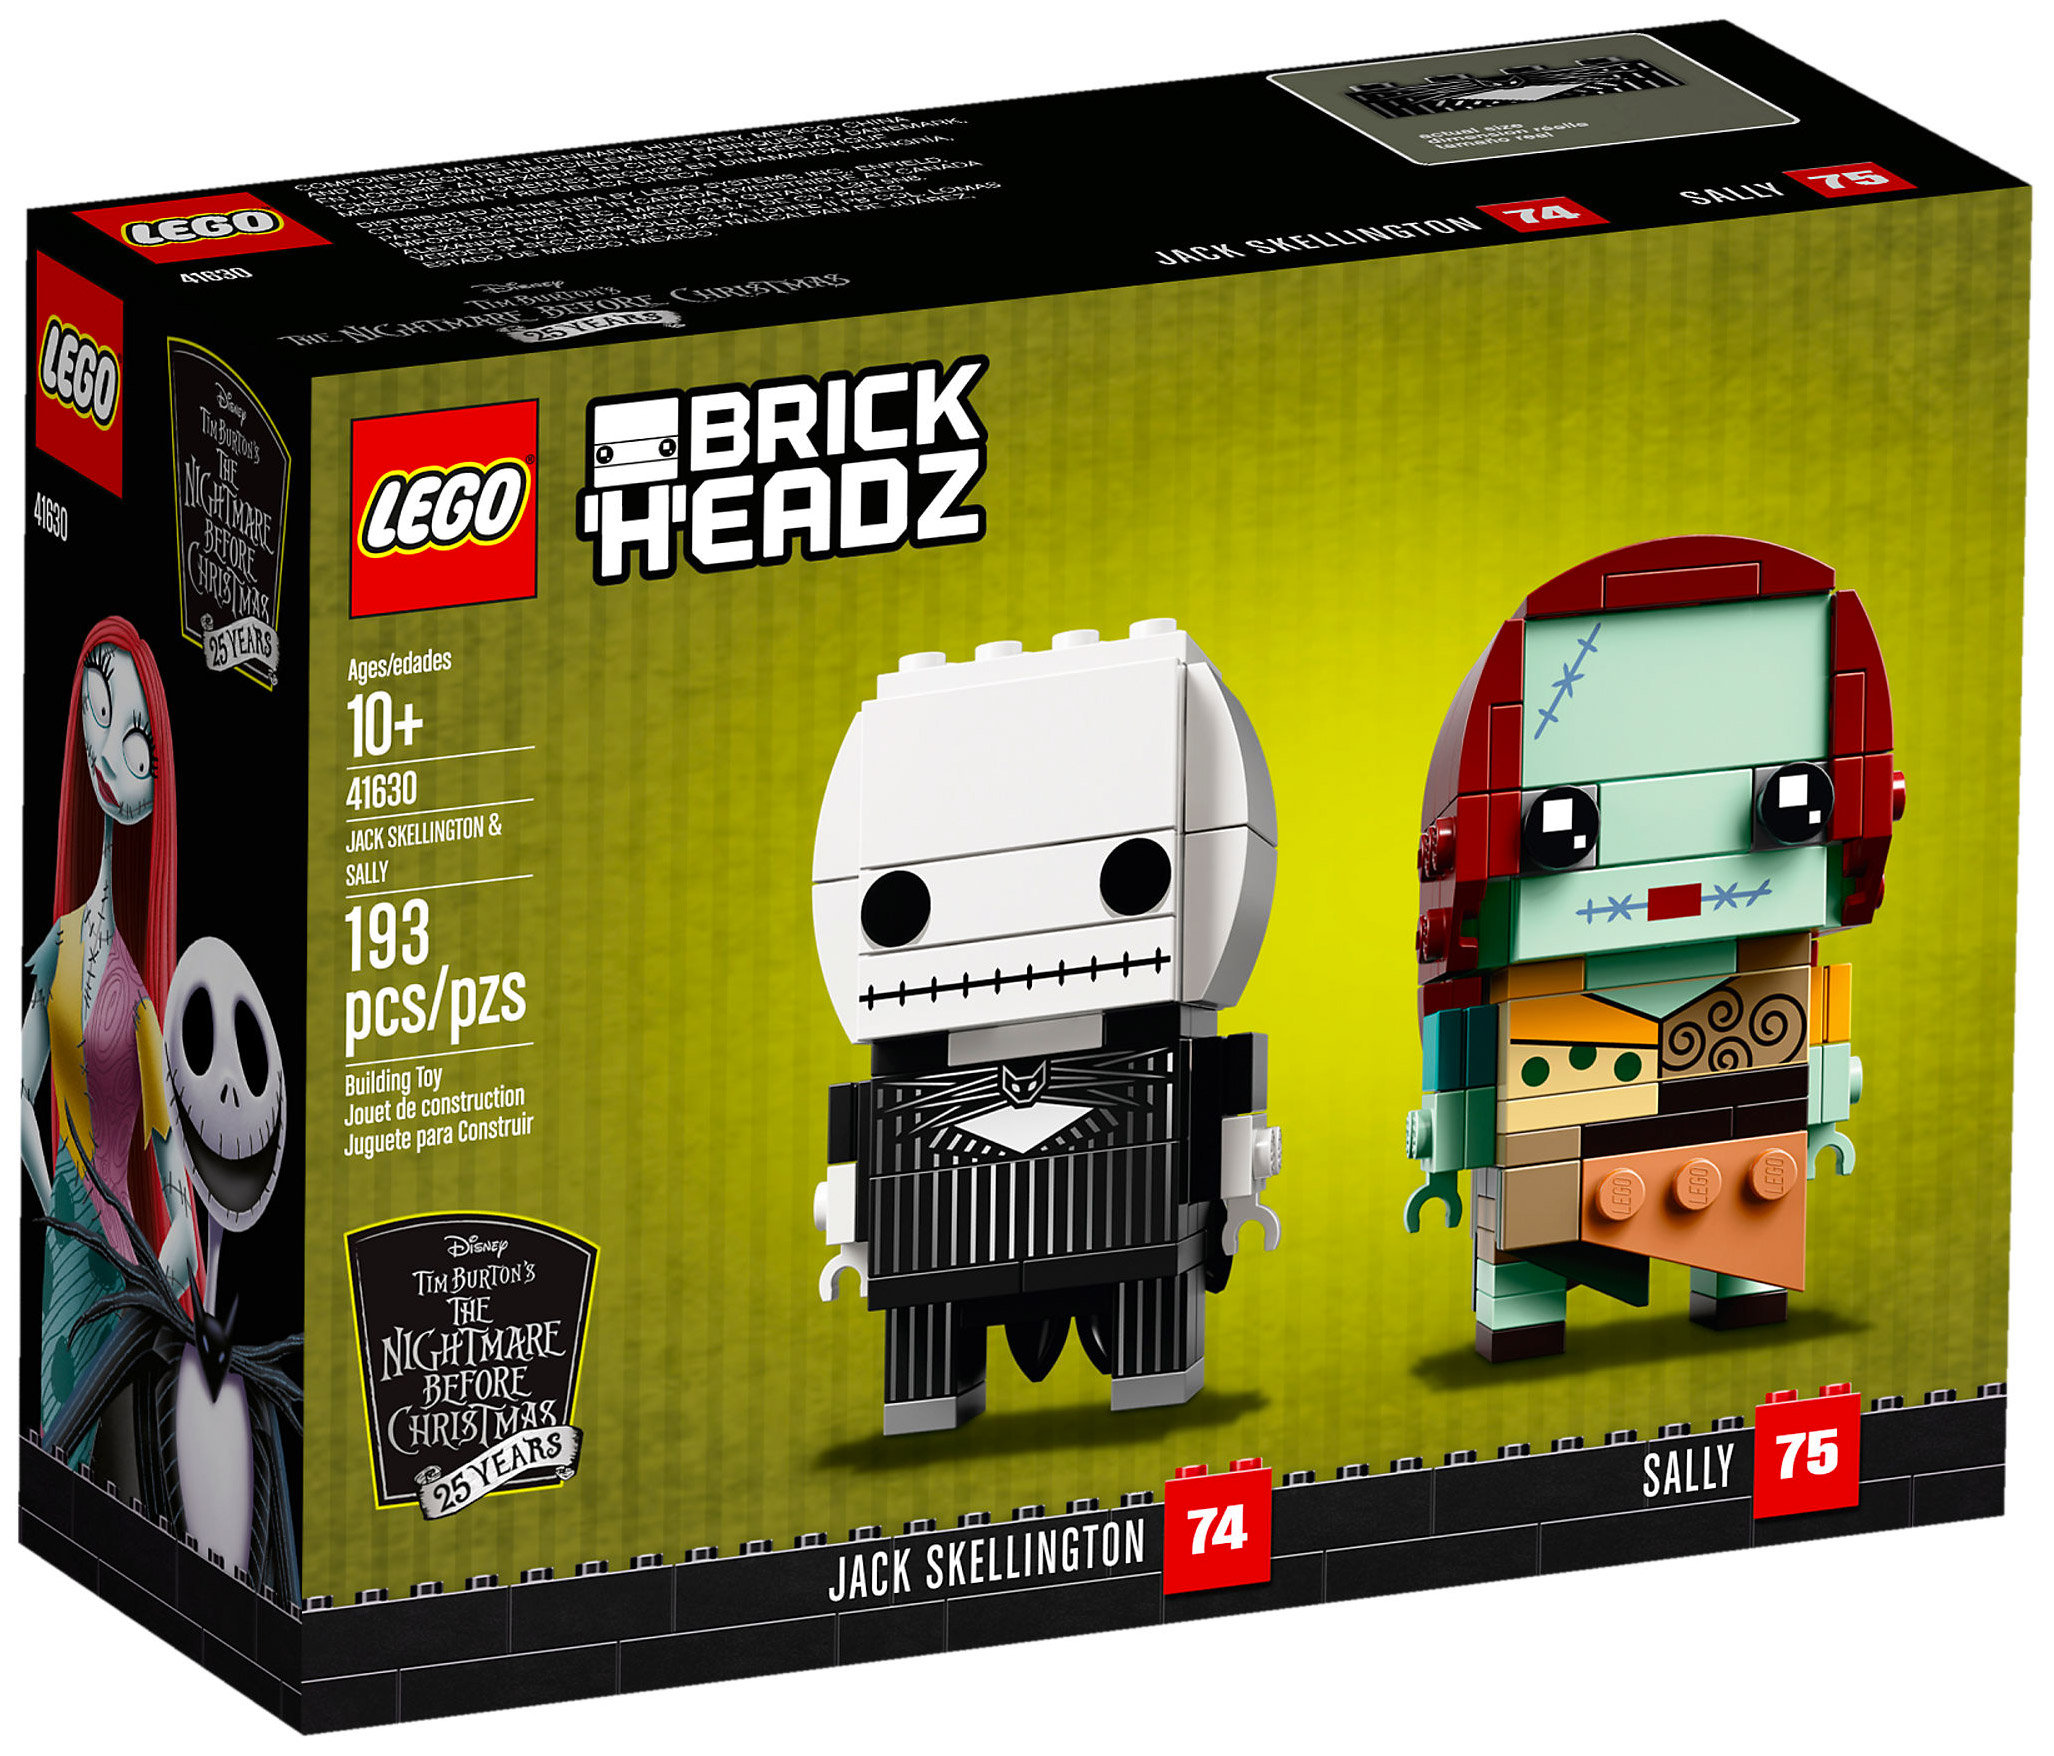 LEGO BrickHeadz 41620 pas cher, Stormtrooper (Star Wars)